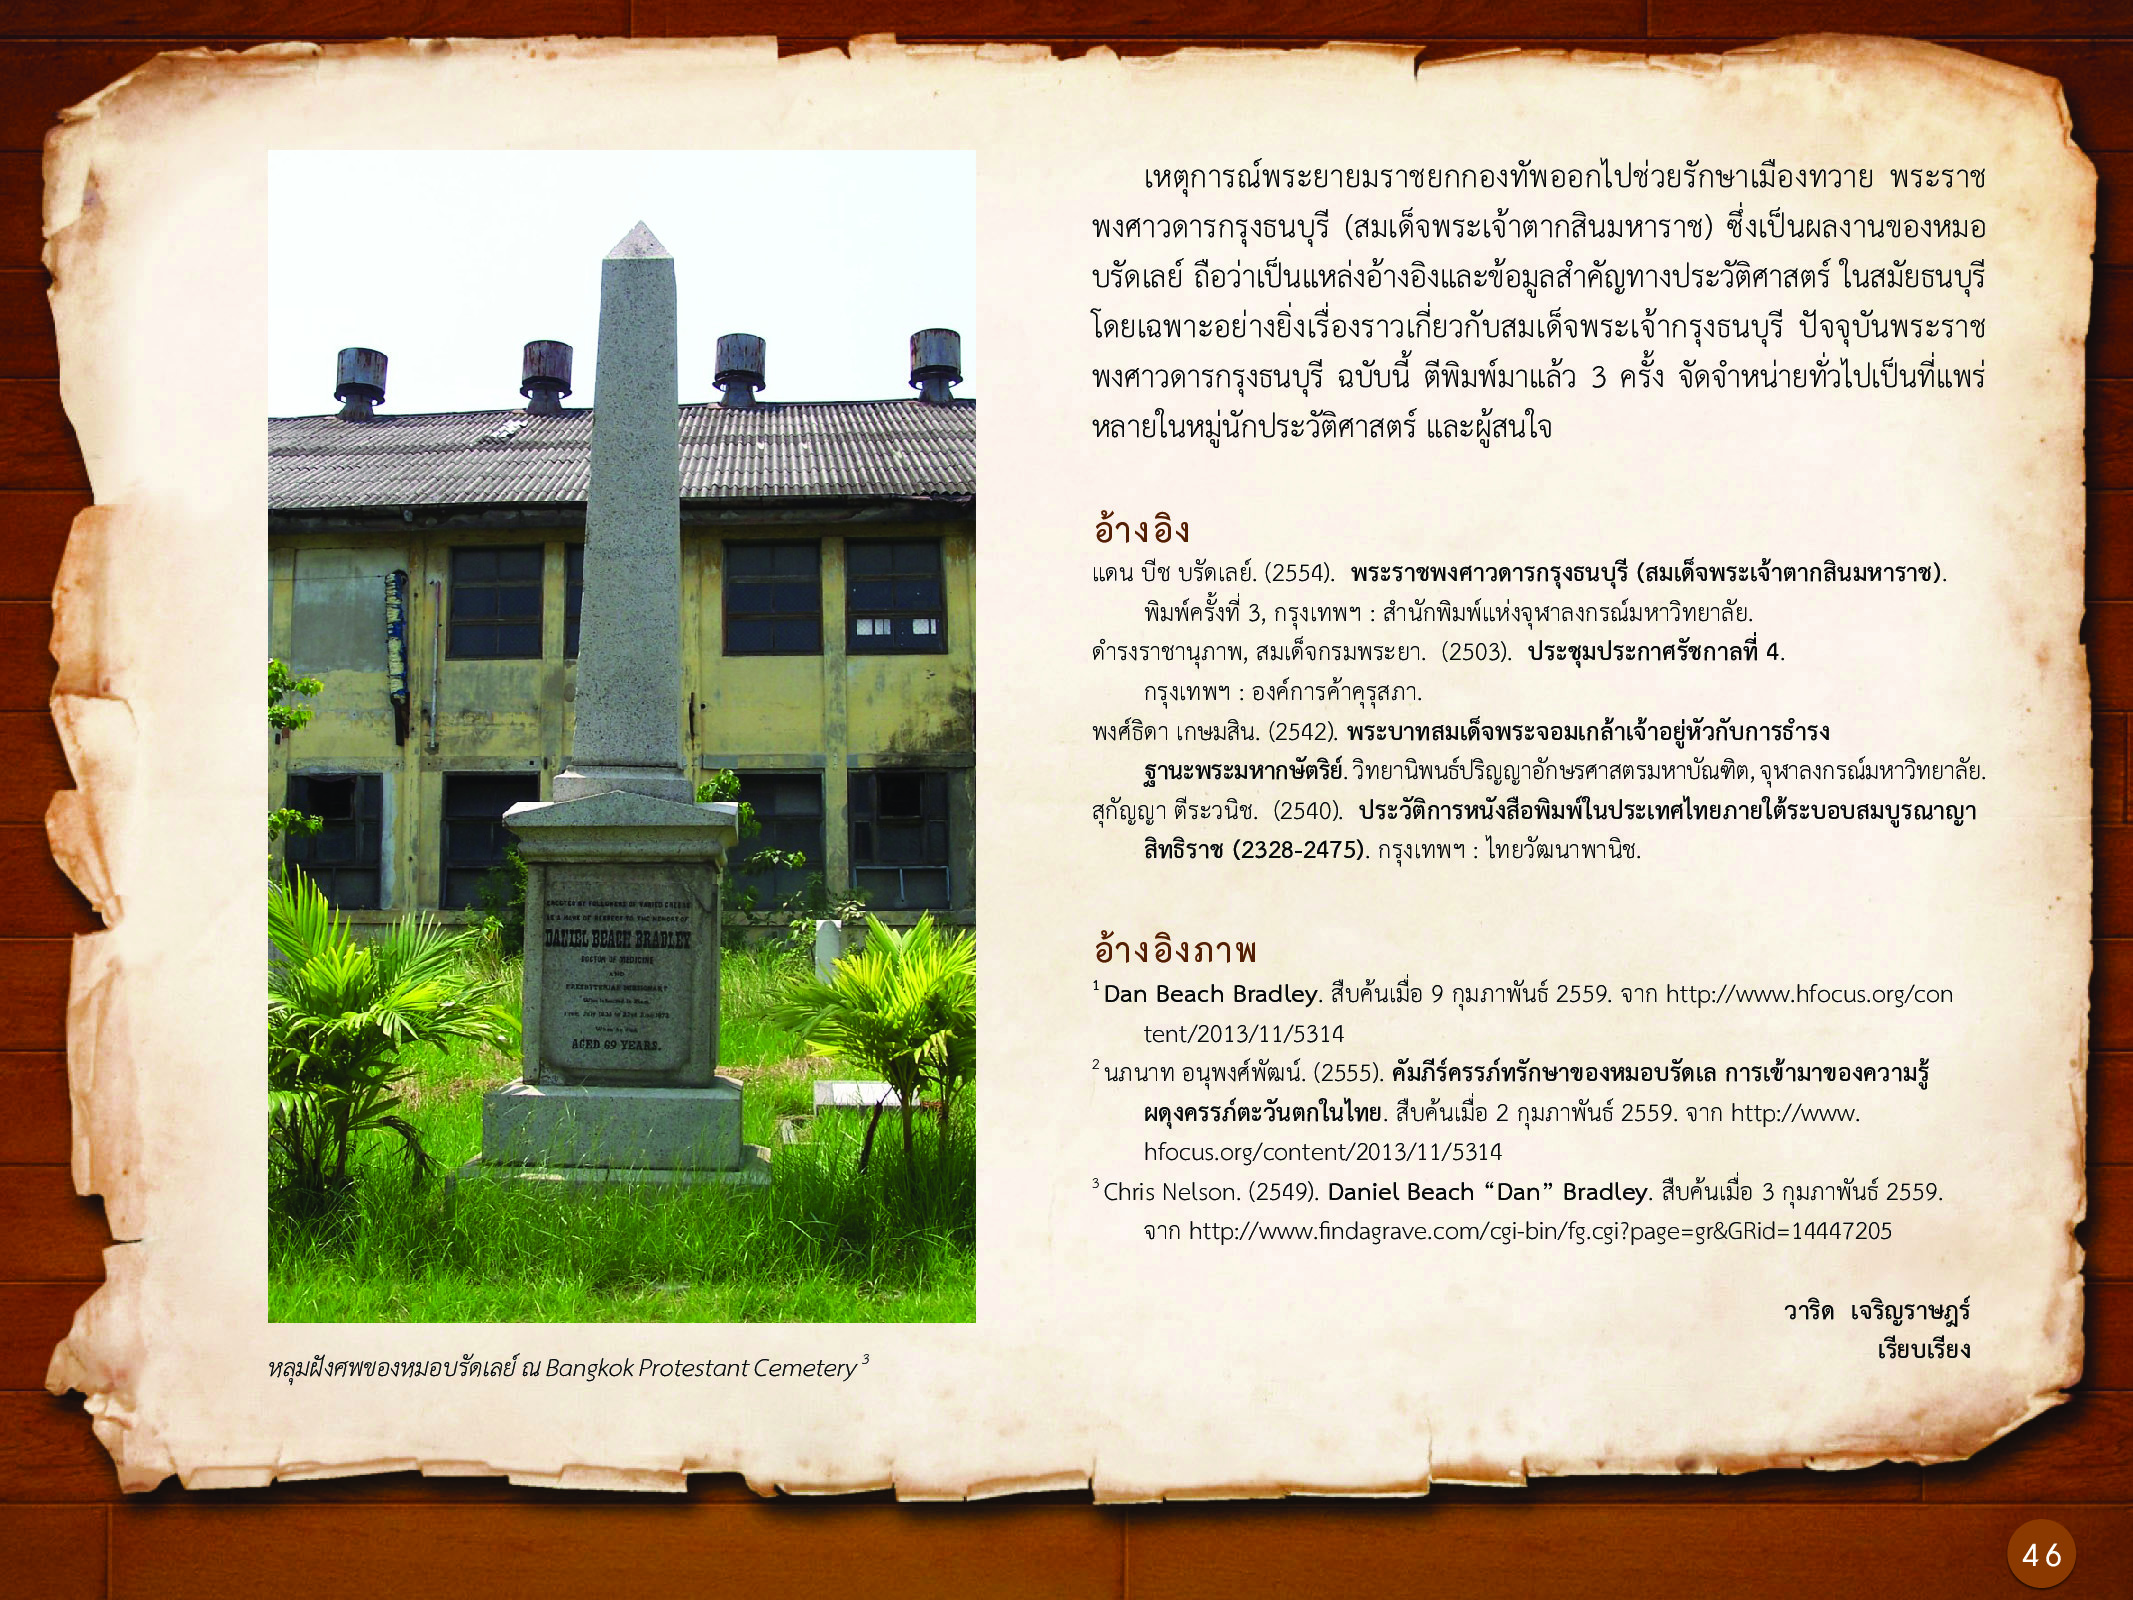 ประวัติศาสตร์กรุงธนบุรี ./images/history_dhonburi/46.jpg